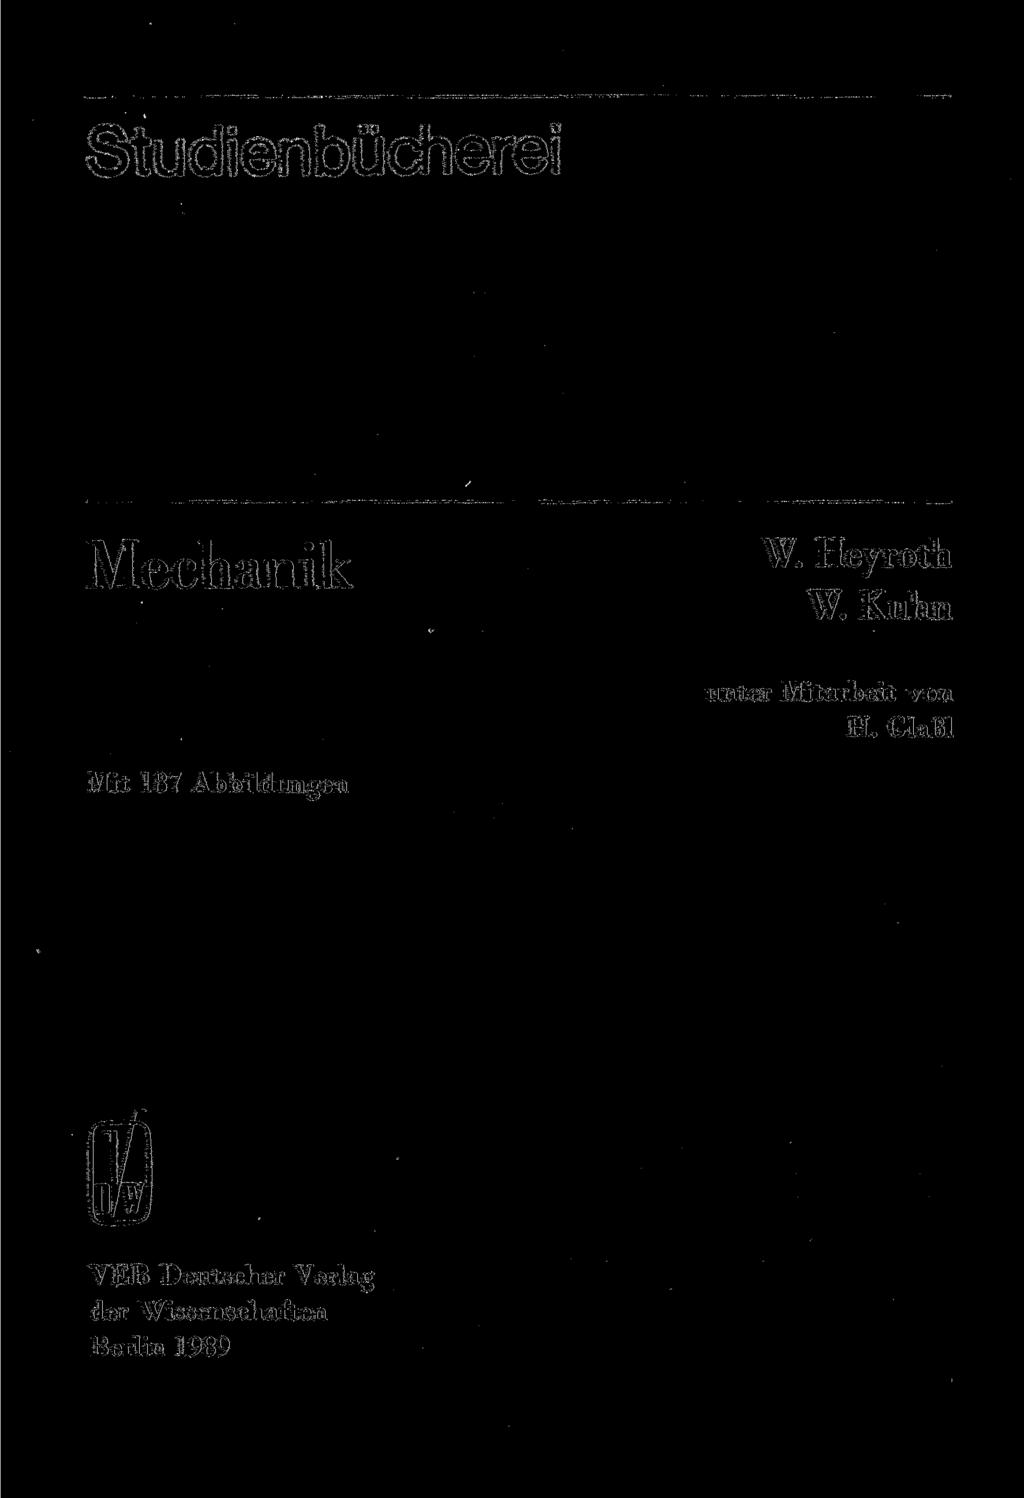 Studienbücherei Mechanik w He y roth W.Kuhn unter Mitarbeit von H.